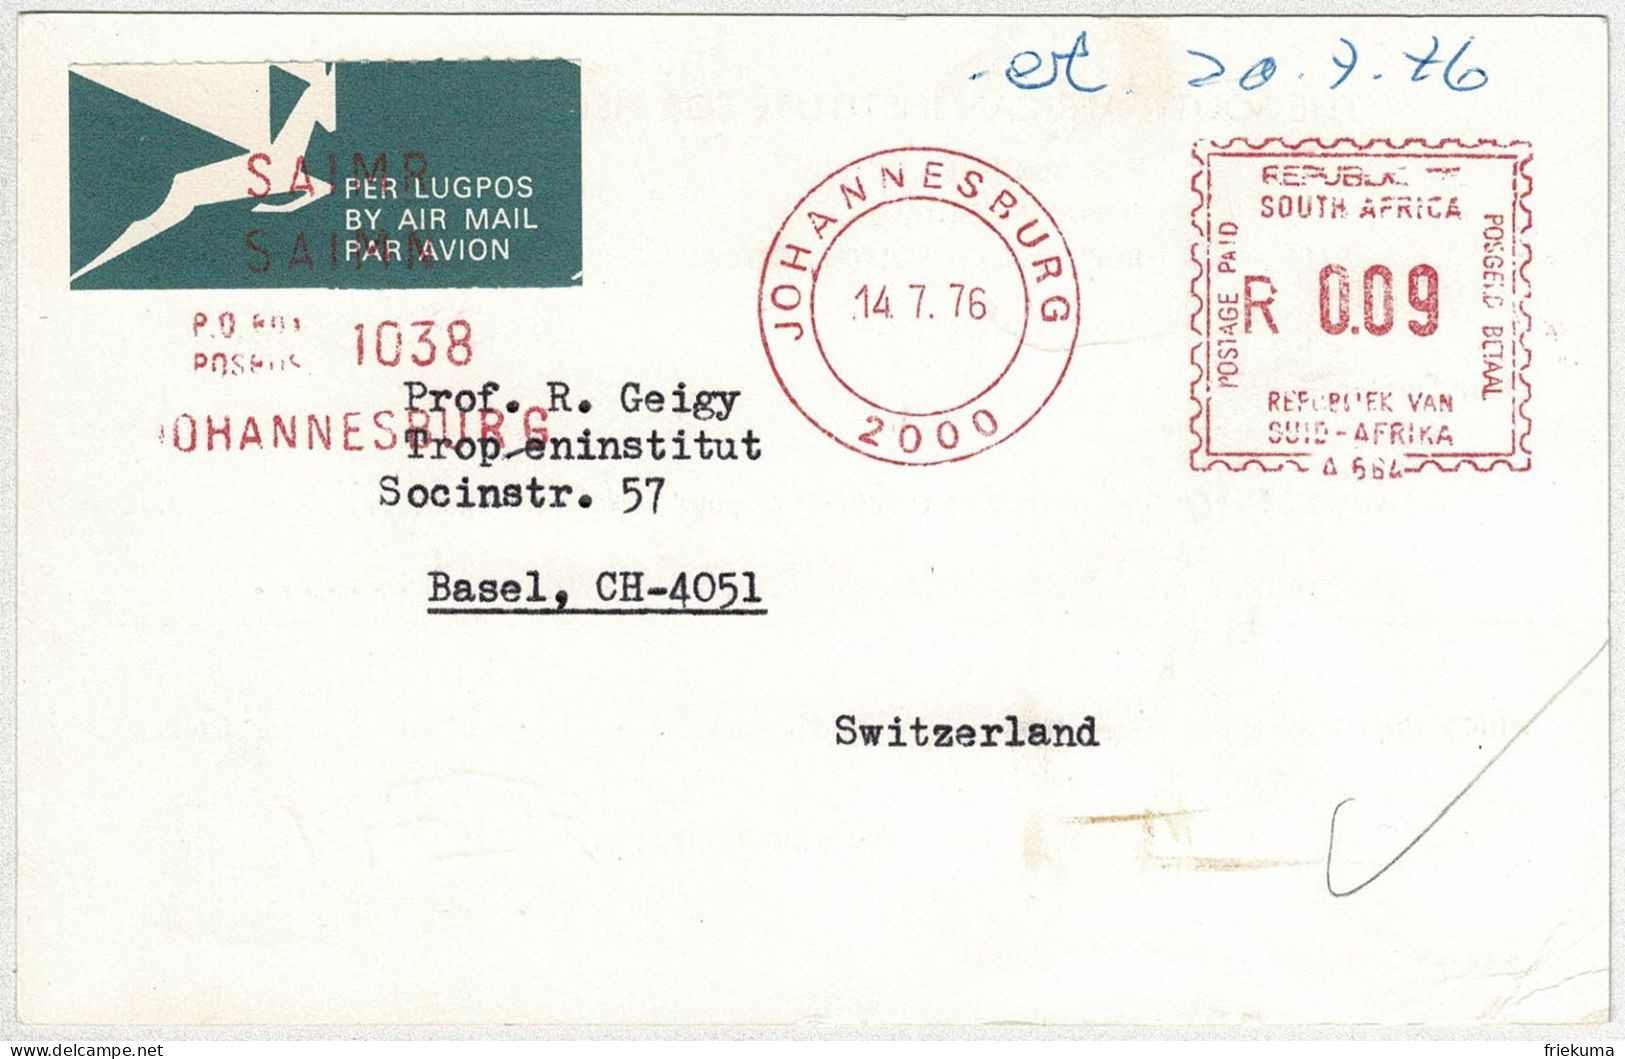 Südafrika / South Africa 1976, Postkarte Luftpost / Air Mail Freistempel / Meterstamp Johannesburg - Basel (Schweiz)  - Lettres & Documents